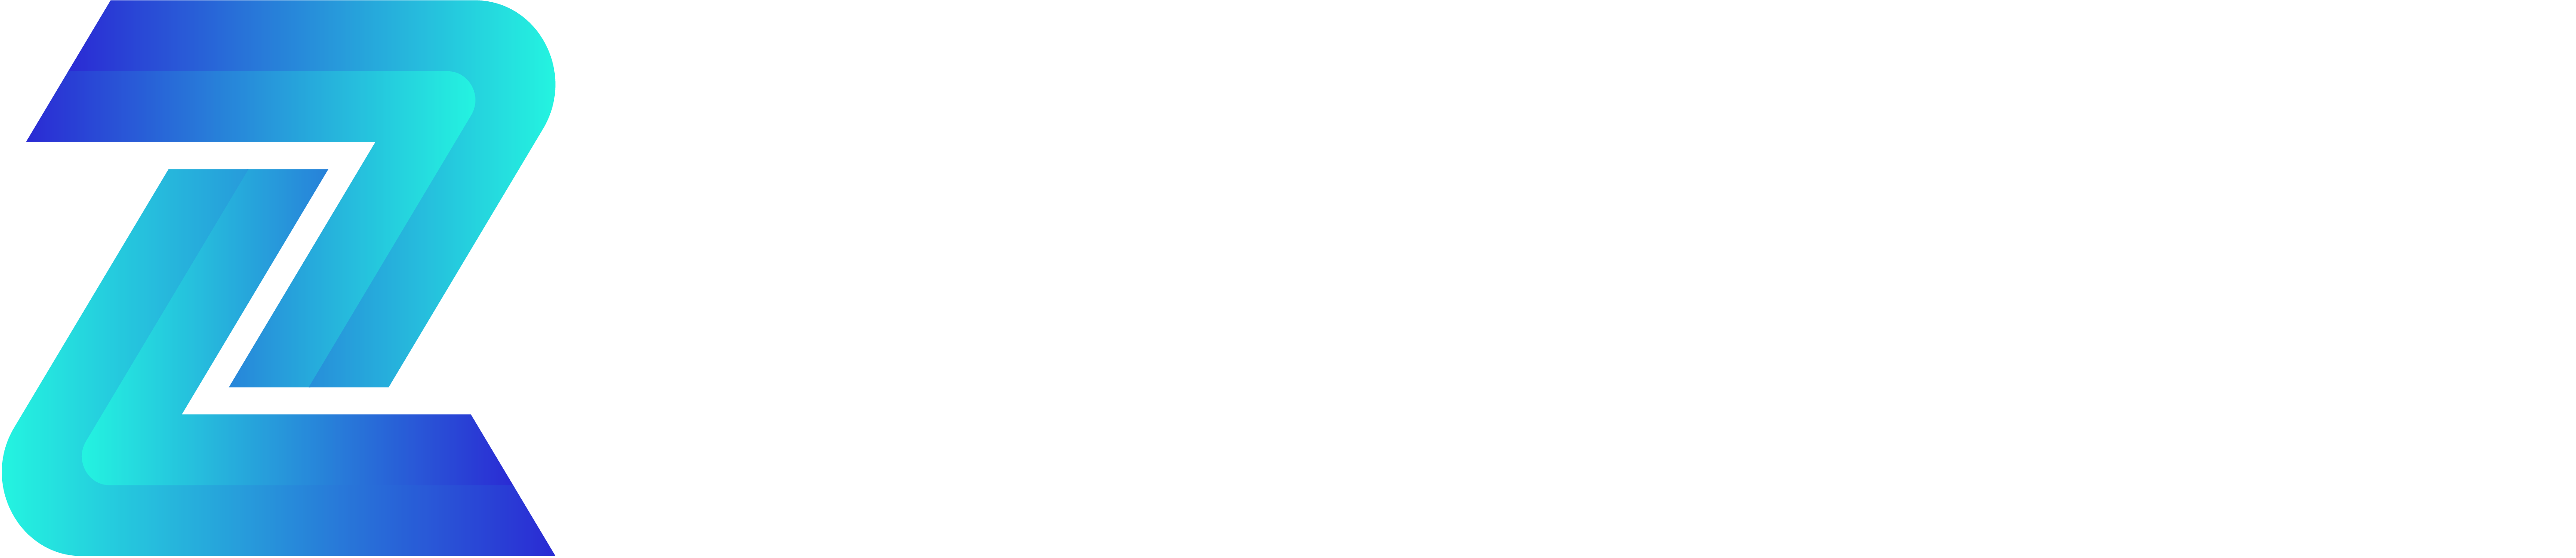 Logo aztech slogan 28